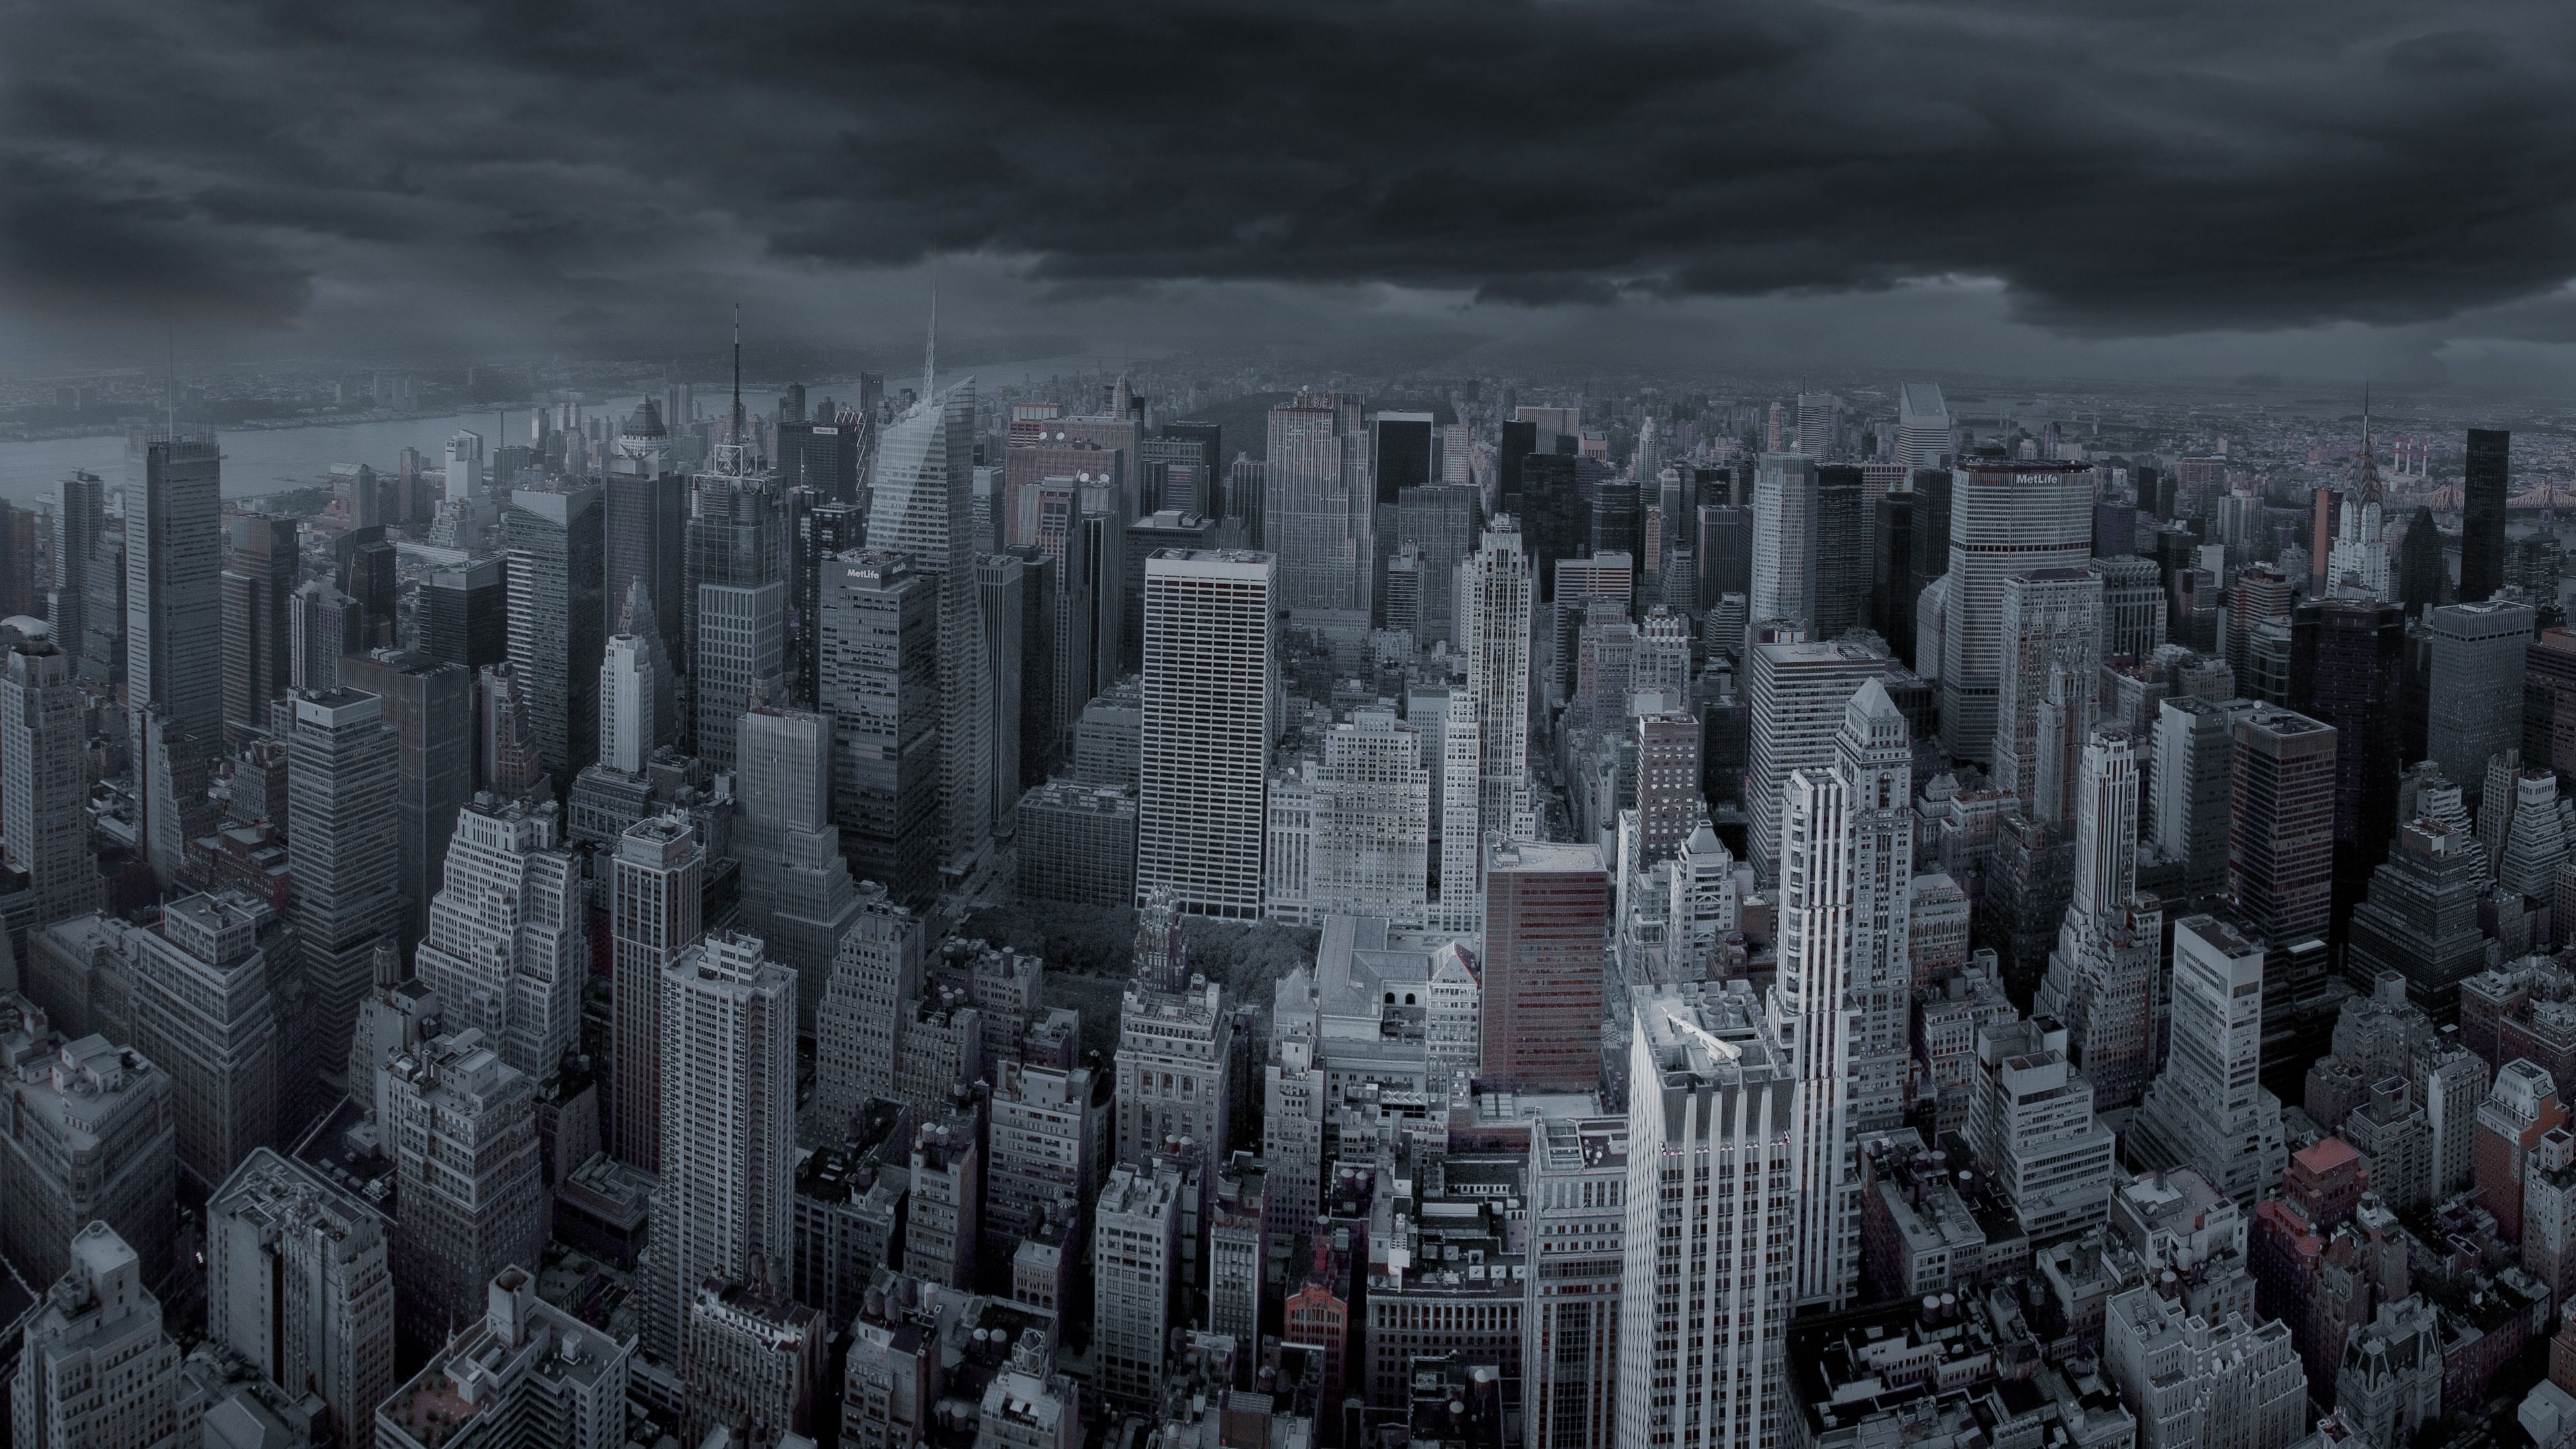 Free download New York City Dark Skies Panorama 4K Ultra HD Desktop Wallpaper [3840x2160] for your Desktop, Mobile & Tablet. Explore New York City 4K Wallpaper. London Wallpaper 4K